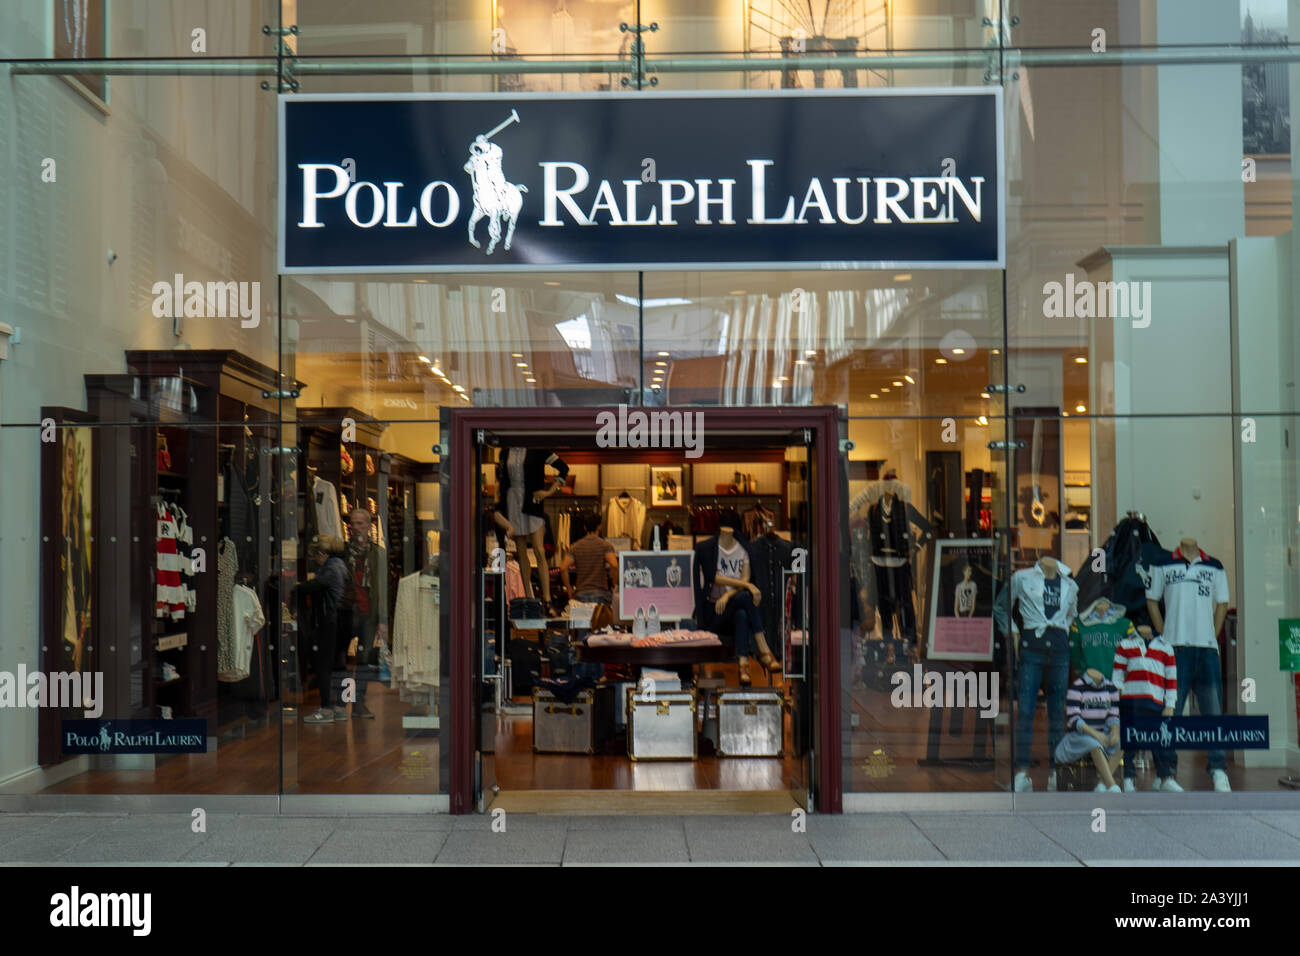 Polo By Ralph Lauren Stockfotos und -bilder Kaufen - Alamy